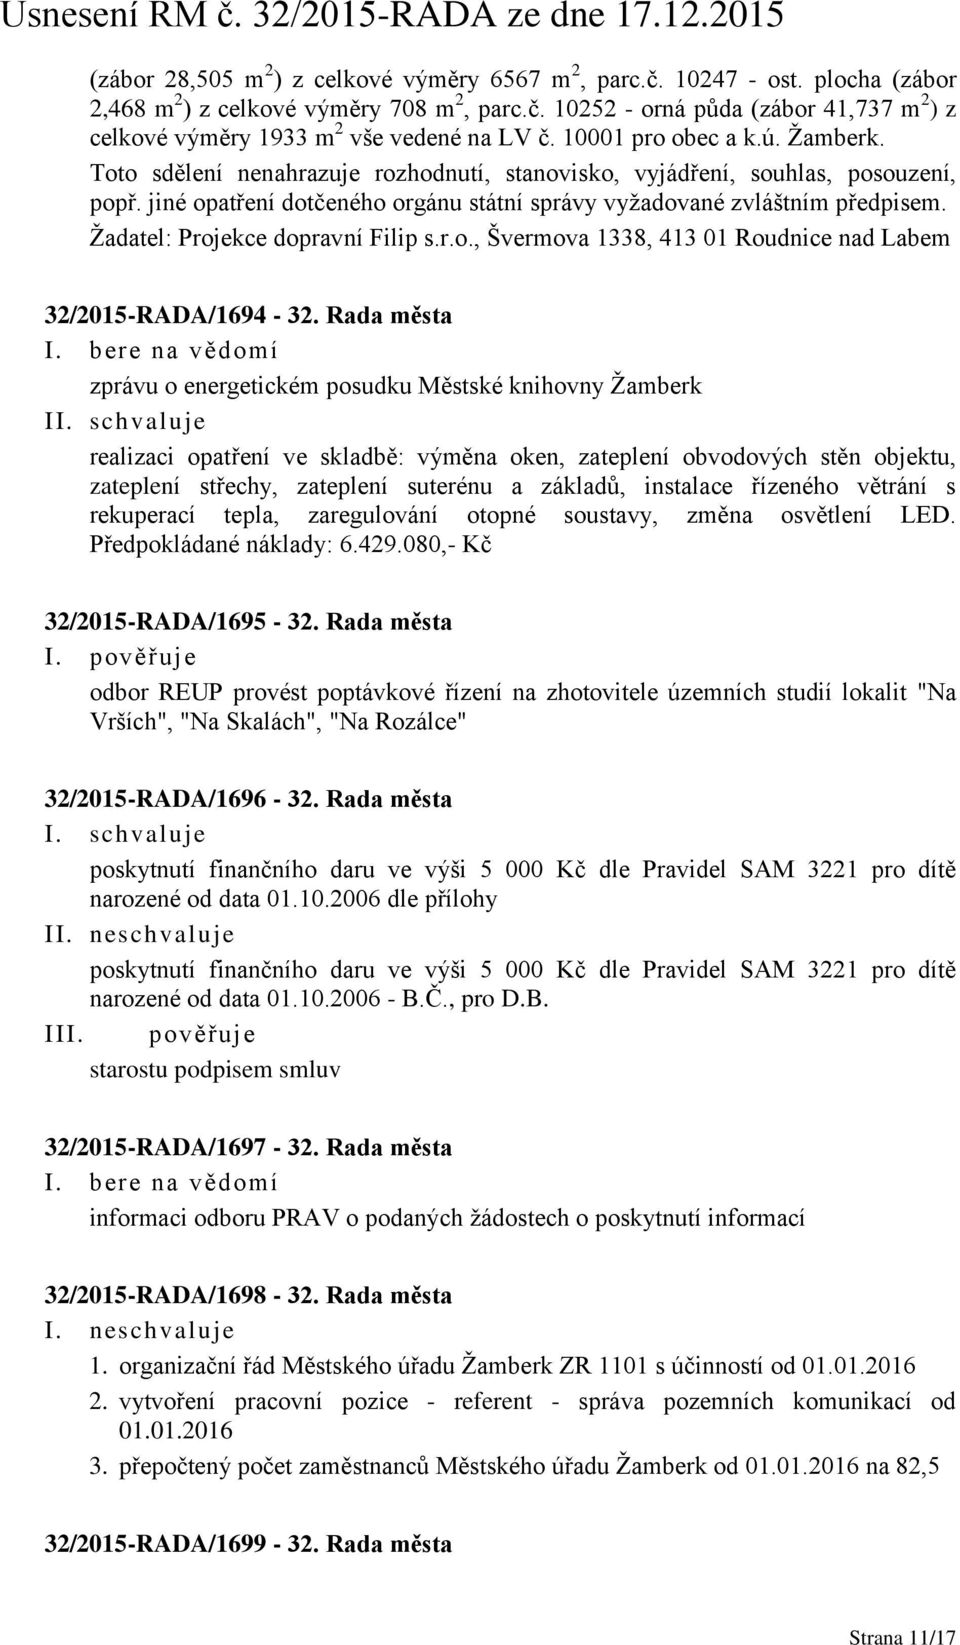 Žadatel: Projekce dopravní Filip s.r.o., Švermova 1338, 413 01 Roudnice nad Labem 32/2015-RADA/1694-32.